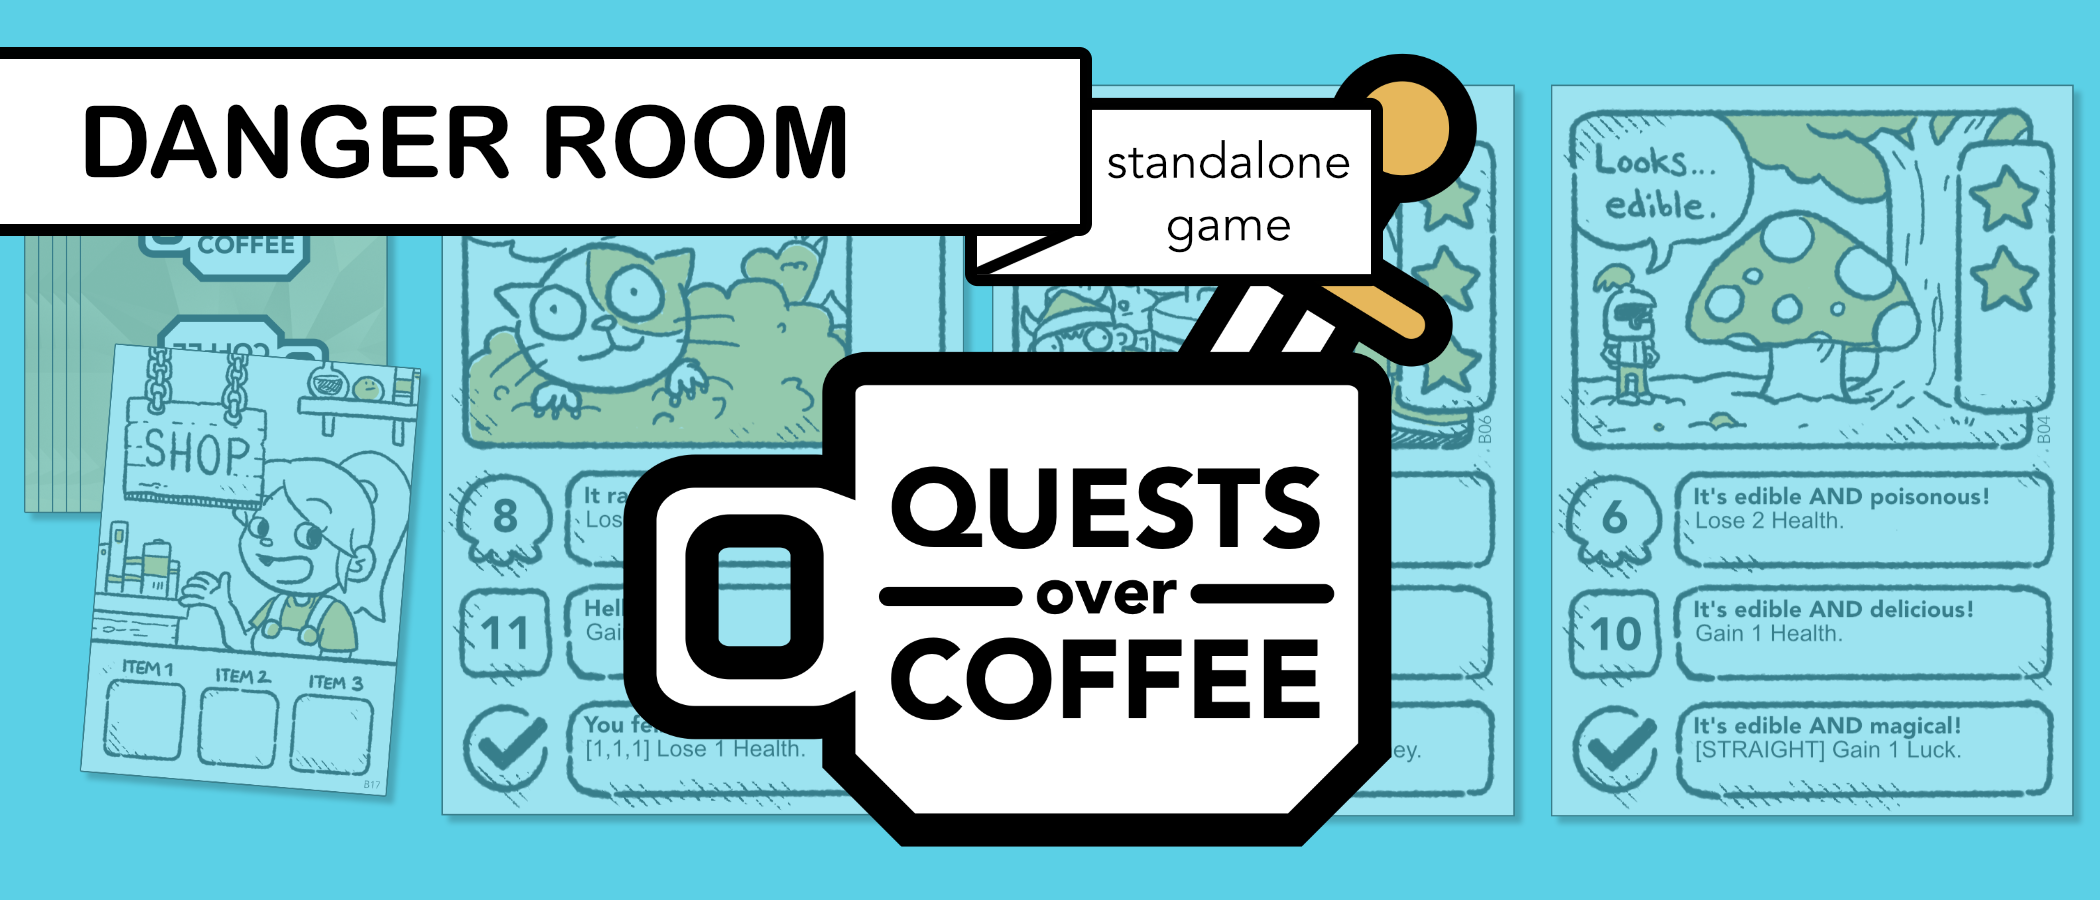 Quests Over Coffee: Danger Room